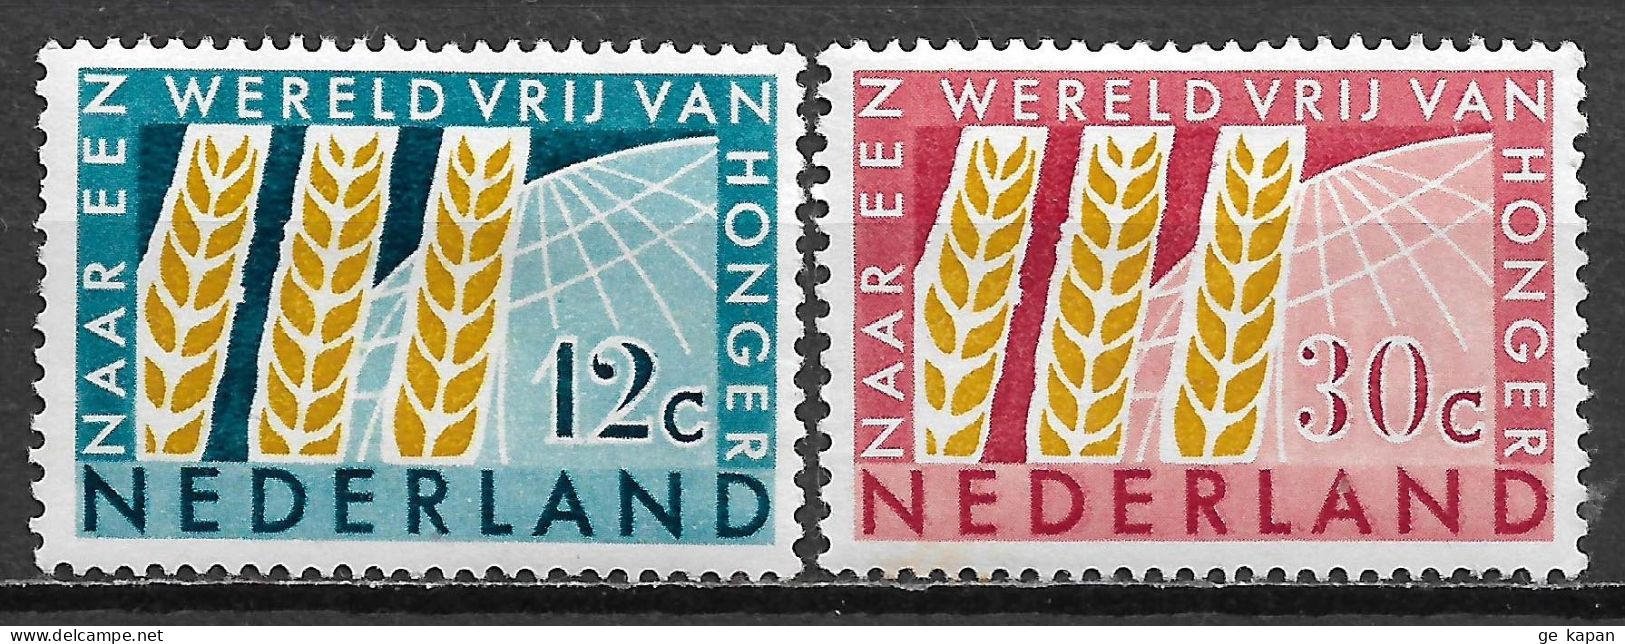 1963 NETHERLANDS Complete Set Of 2 MVLH STAMPS (Michel # 791,792) CV €1.50 - Neufs